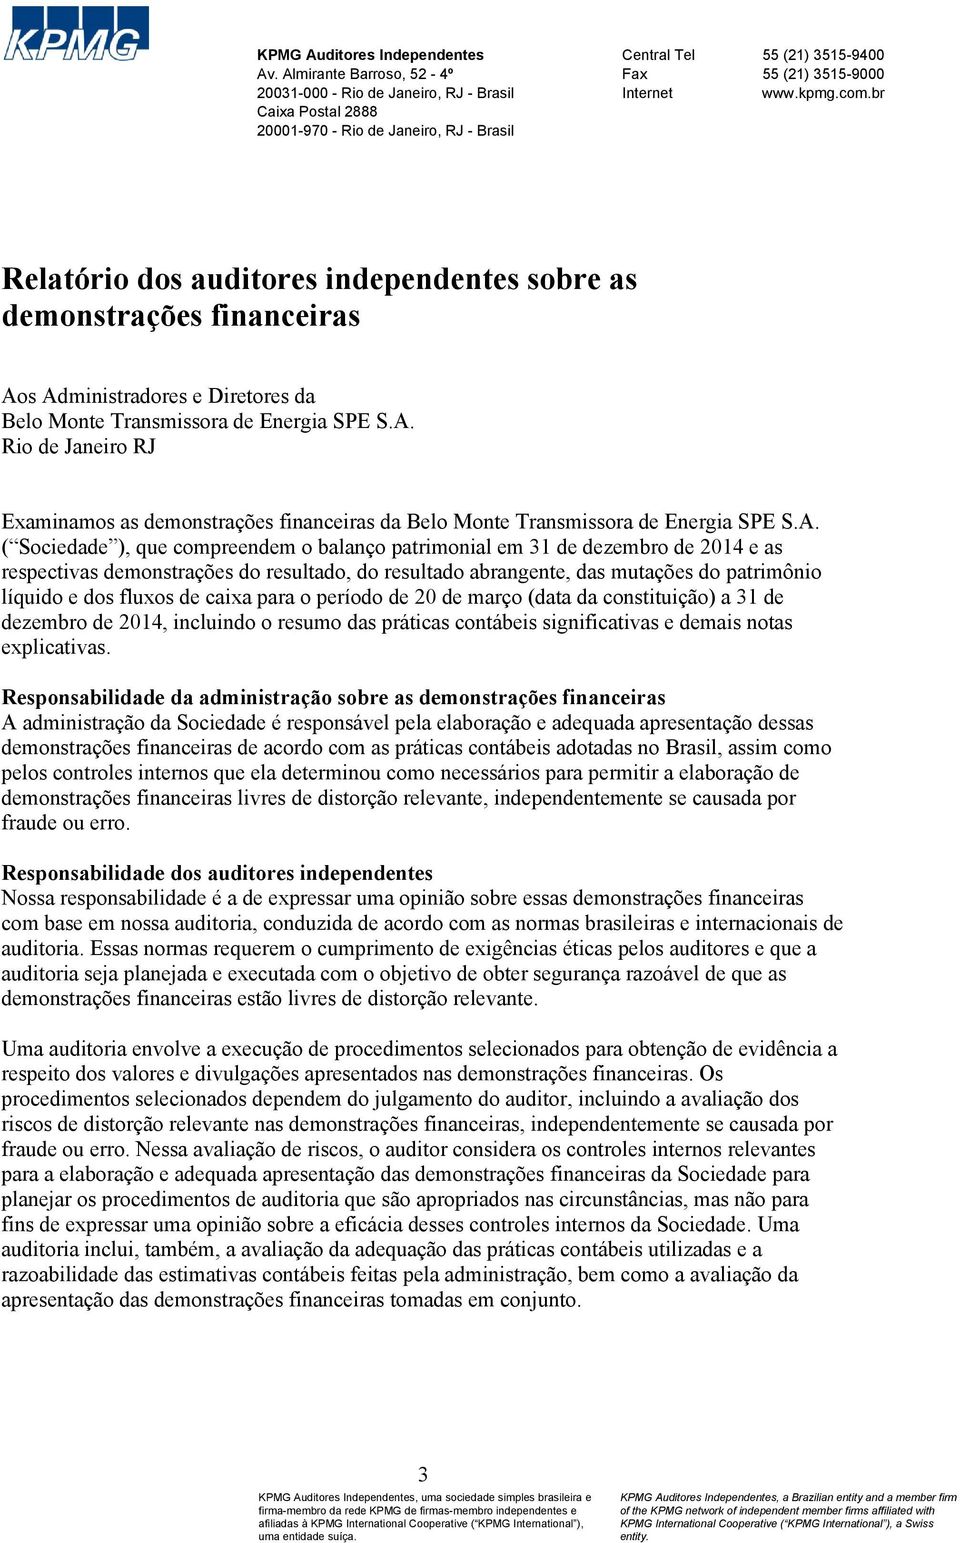 br Relatório dos auditores independentes sobre as demonstrações financeiras Aos Administradores e Diretores da Belo Monte Transmissora de Energia SPE S.A. Rio de Janeiro RJ Examinamos as demonstrações financeiras da Belo Monte Transmissora de Energia SPE S.